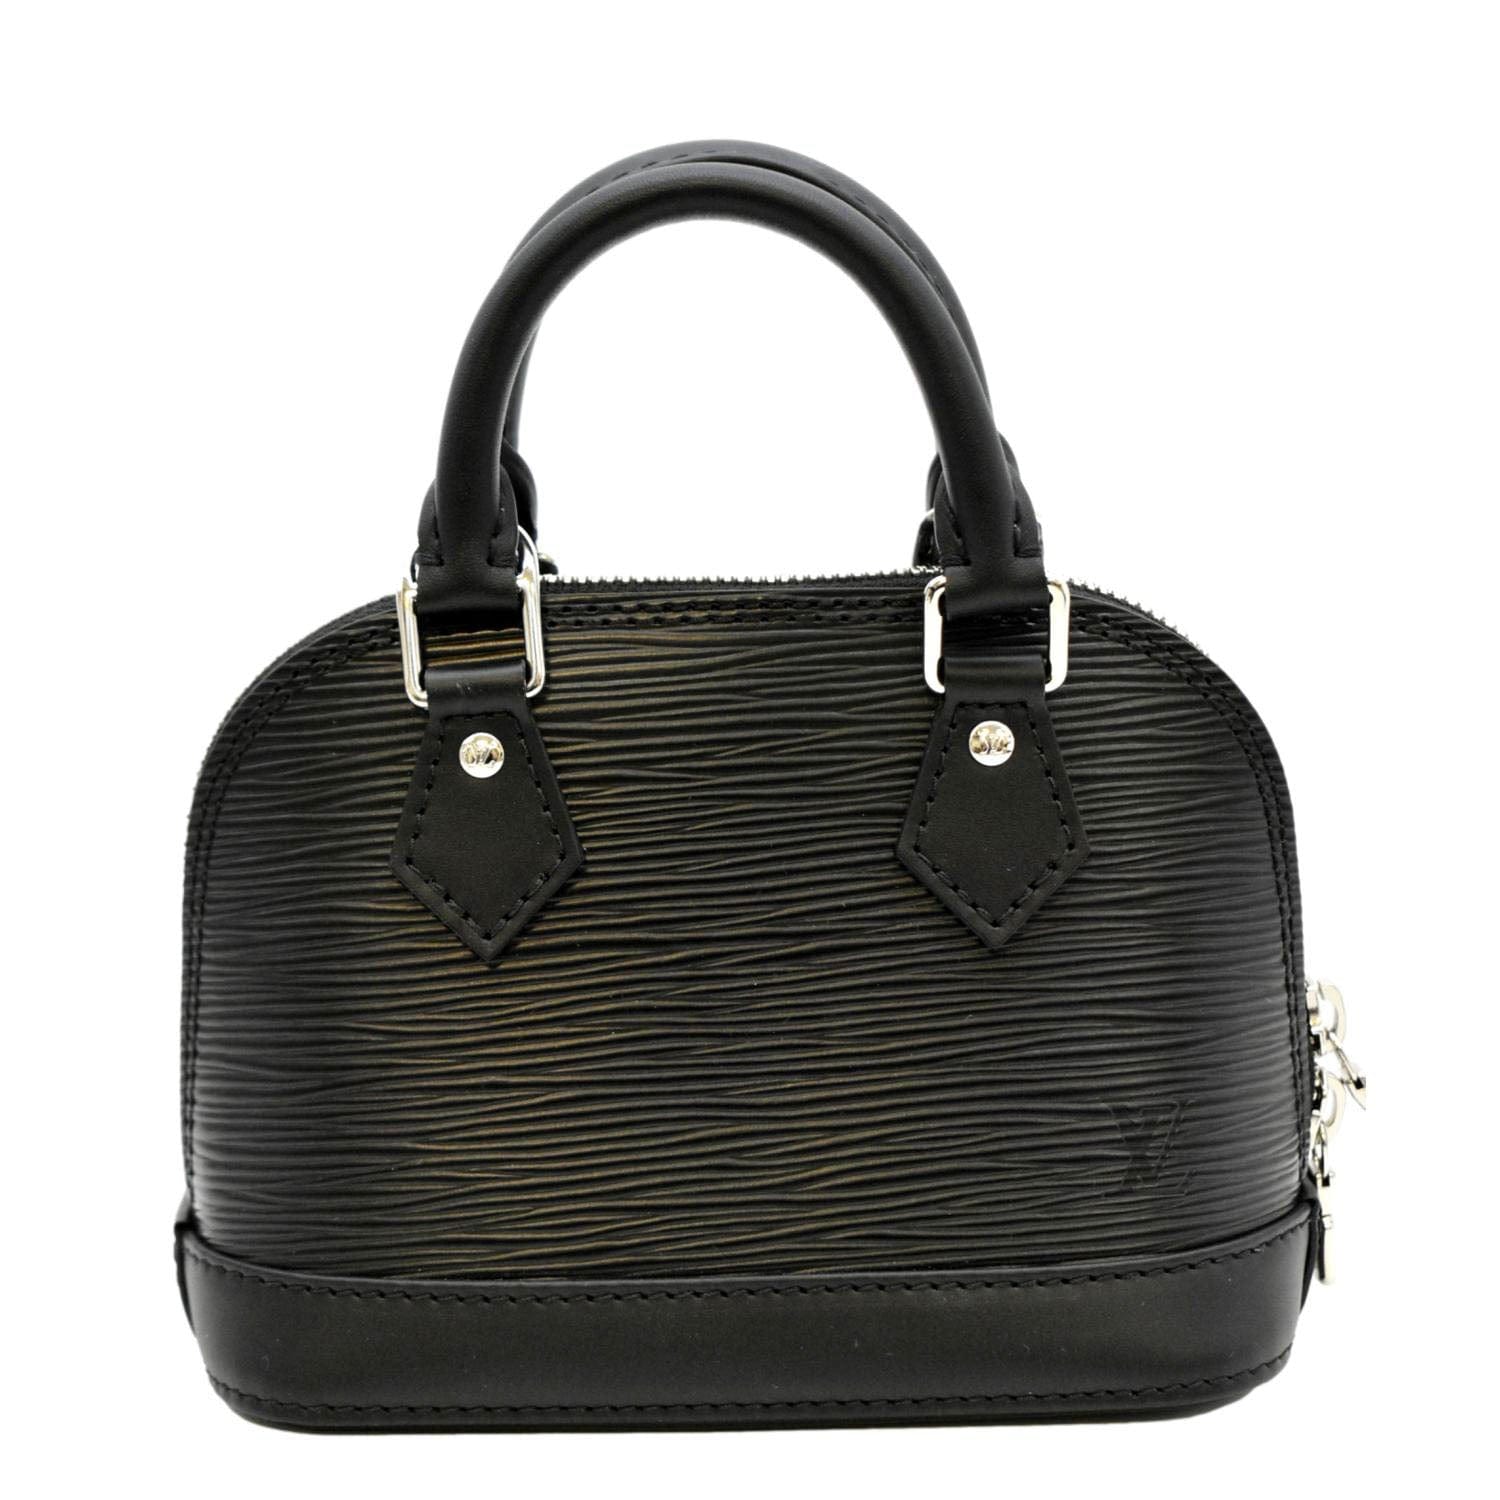 Louis Vuitton Clip It Bracelet Black Leather. Size 21